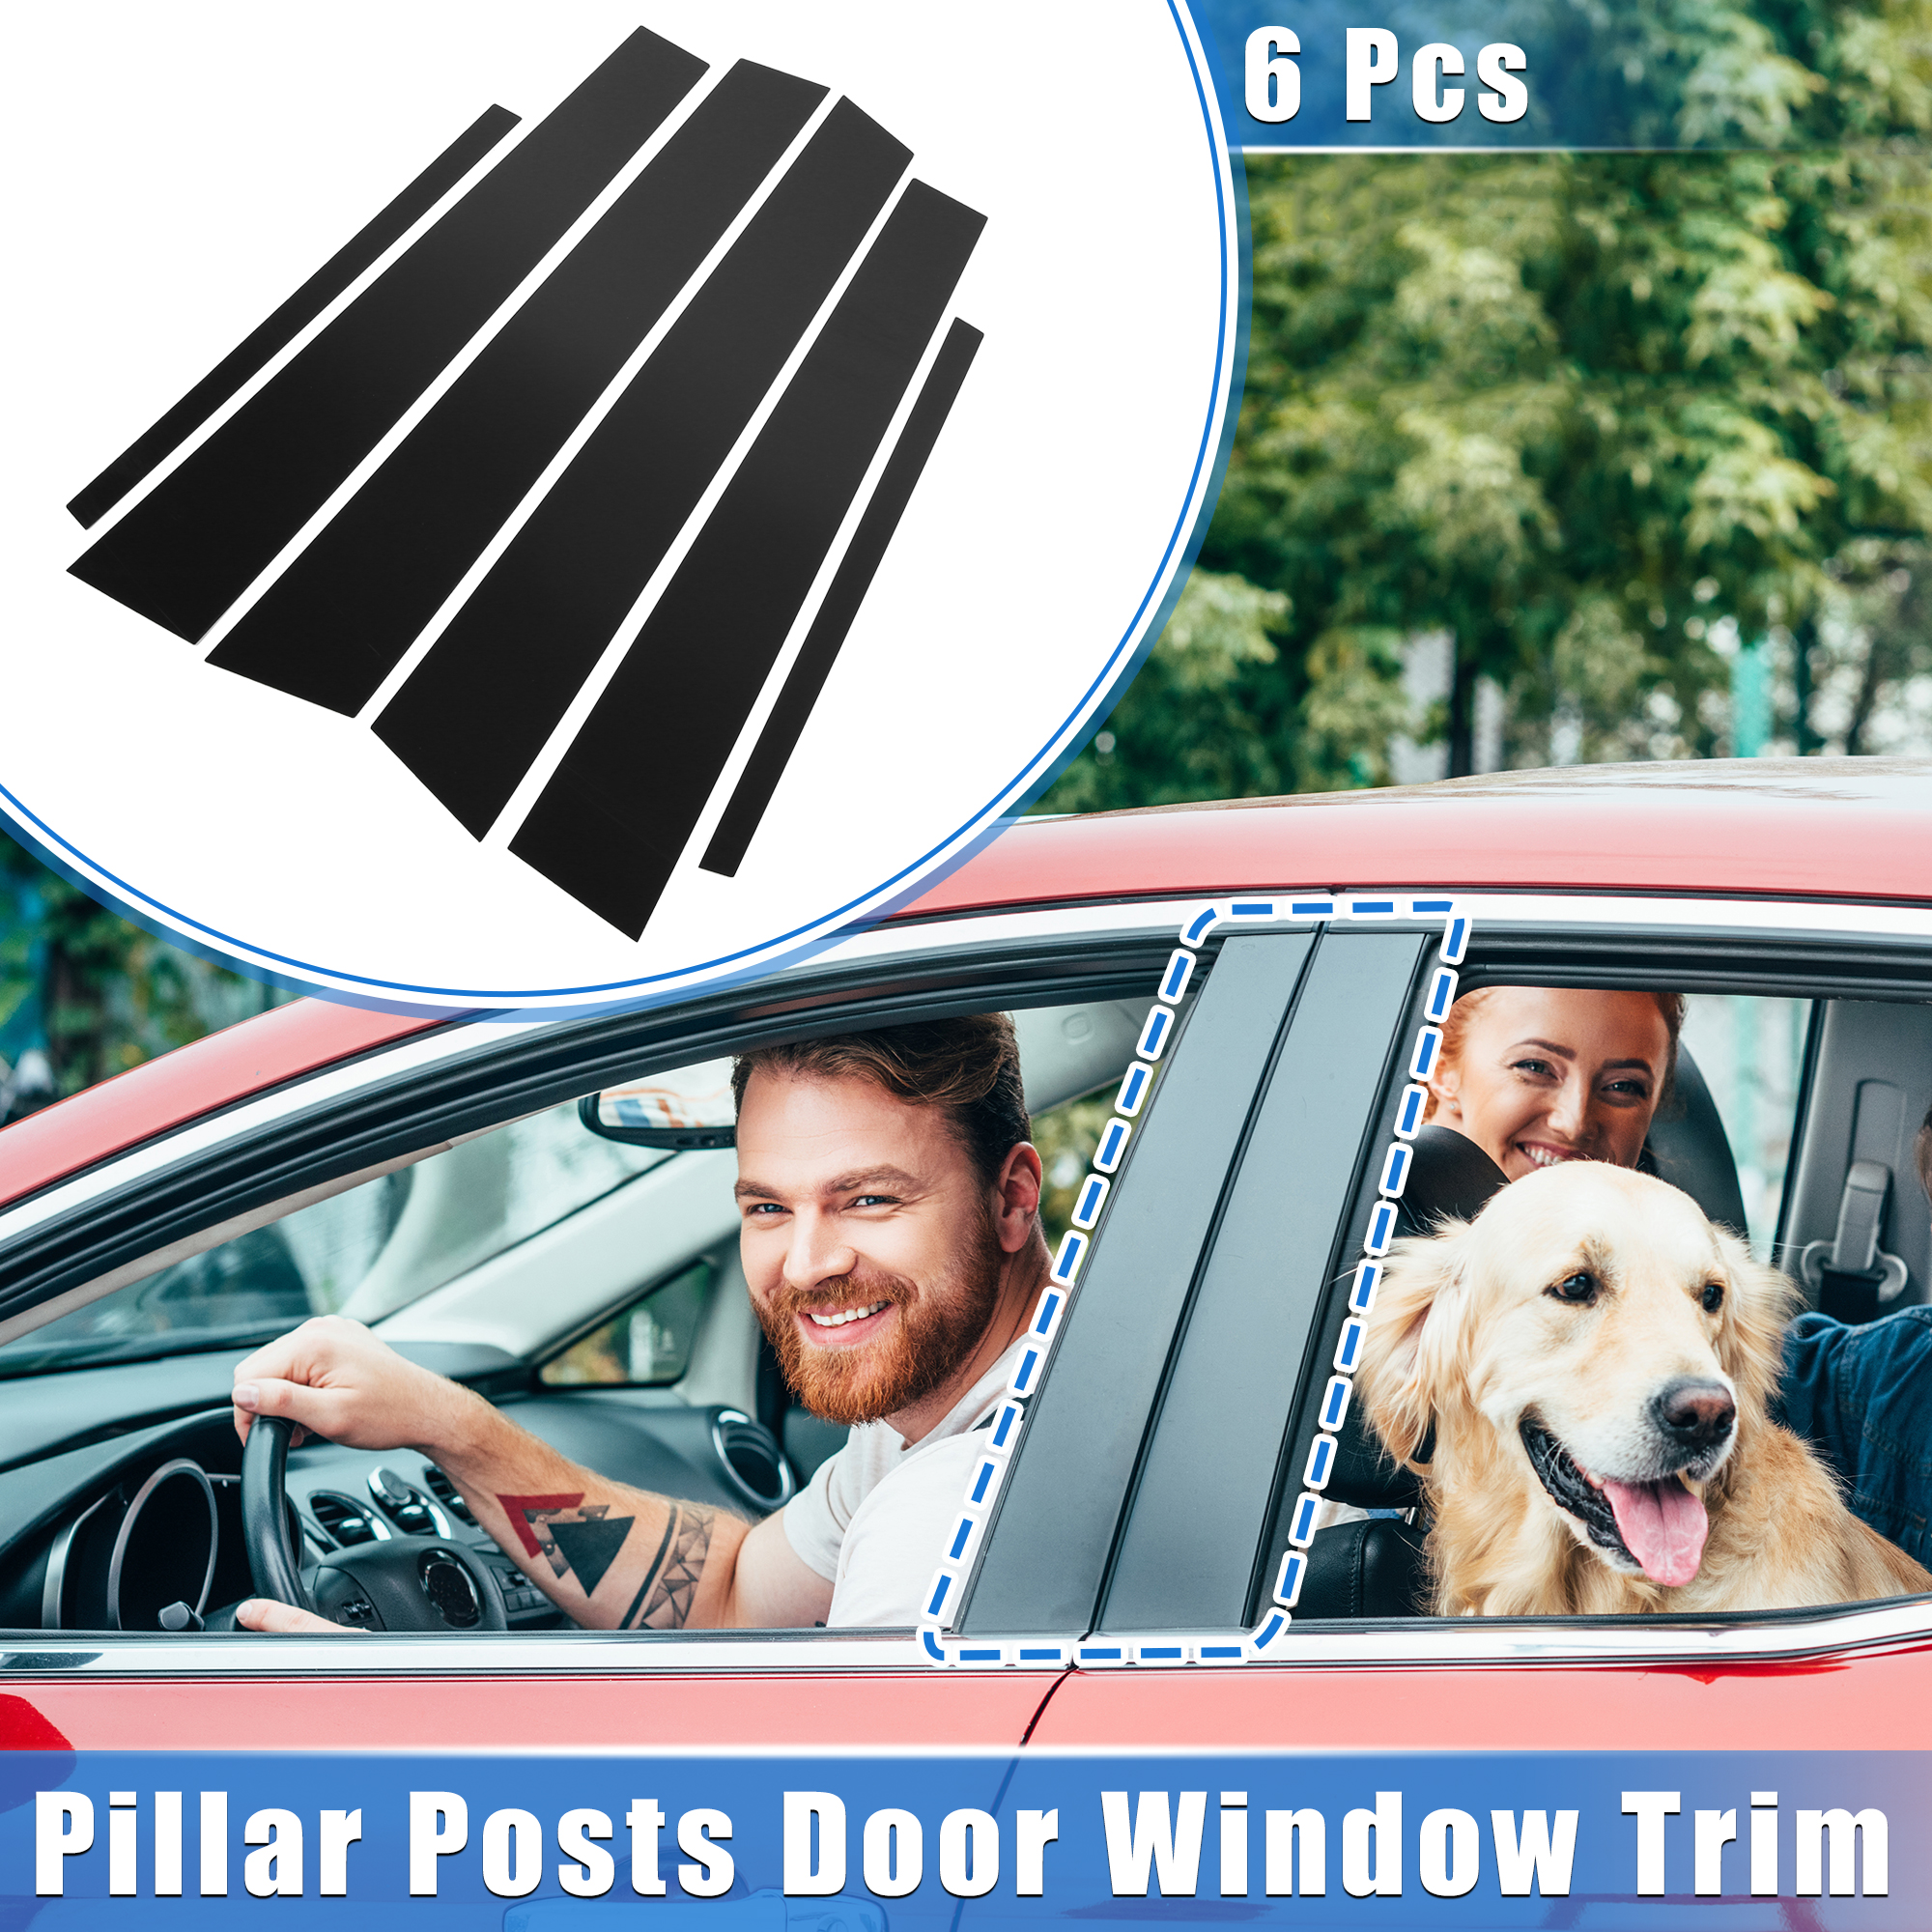 Unique Bargains 6 Pcs Pillar Posts Door Window Trim Cover for Honda Accord Sedan 08-12 Black